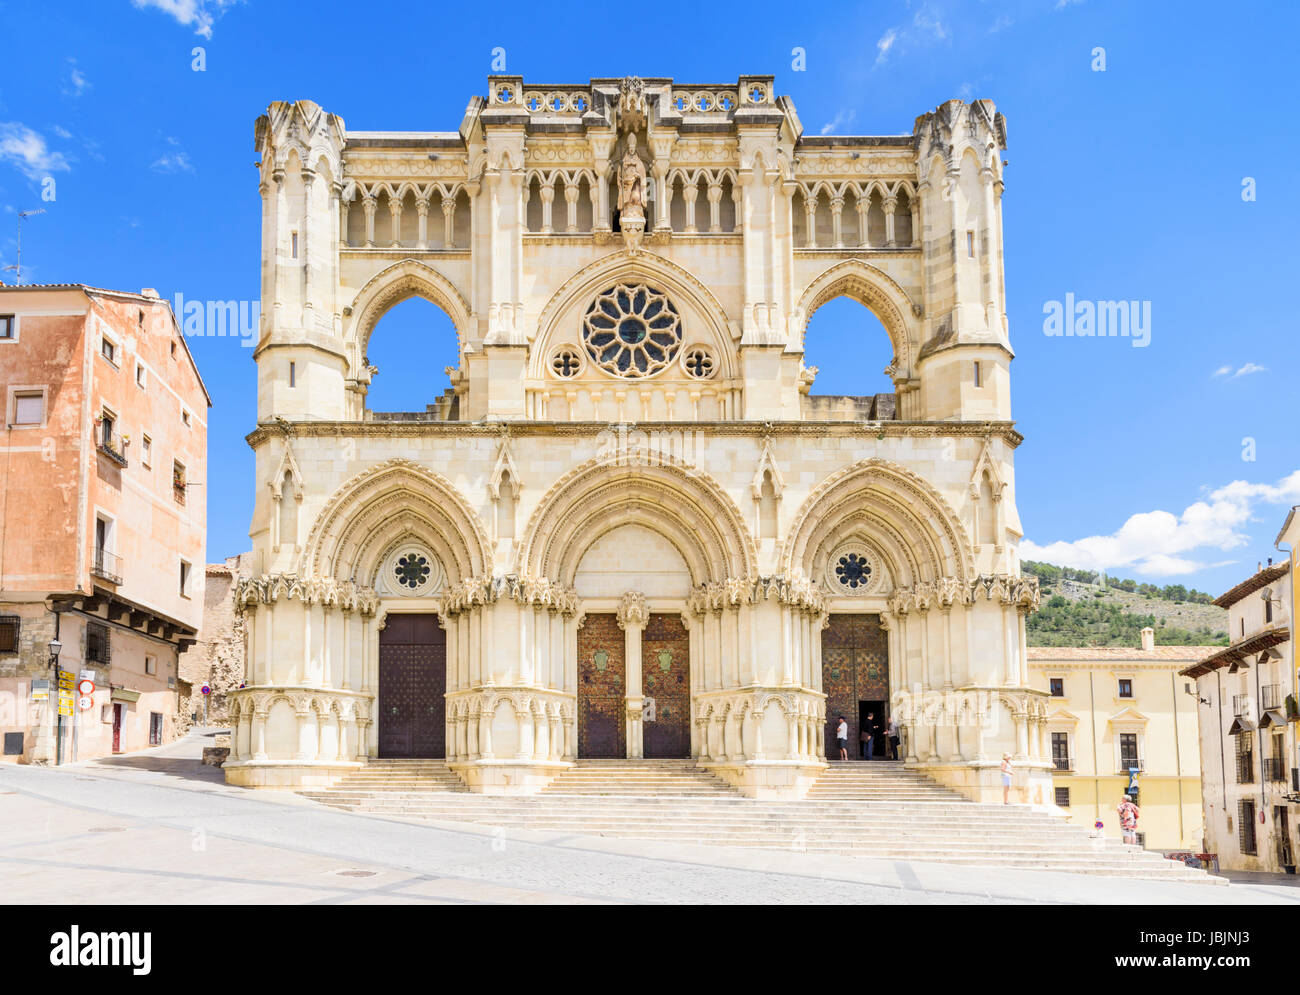 Fassade der Kathedrale von Santa Maria de Gracia, Plaza Mayor, Cuenca, Castilla La Mancha, Spanien Stockfoto